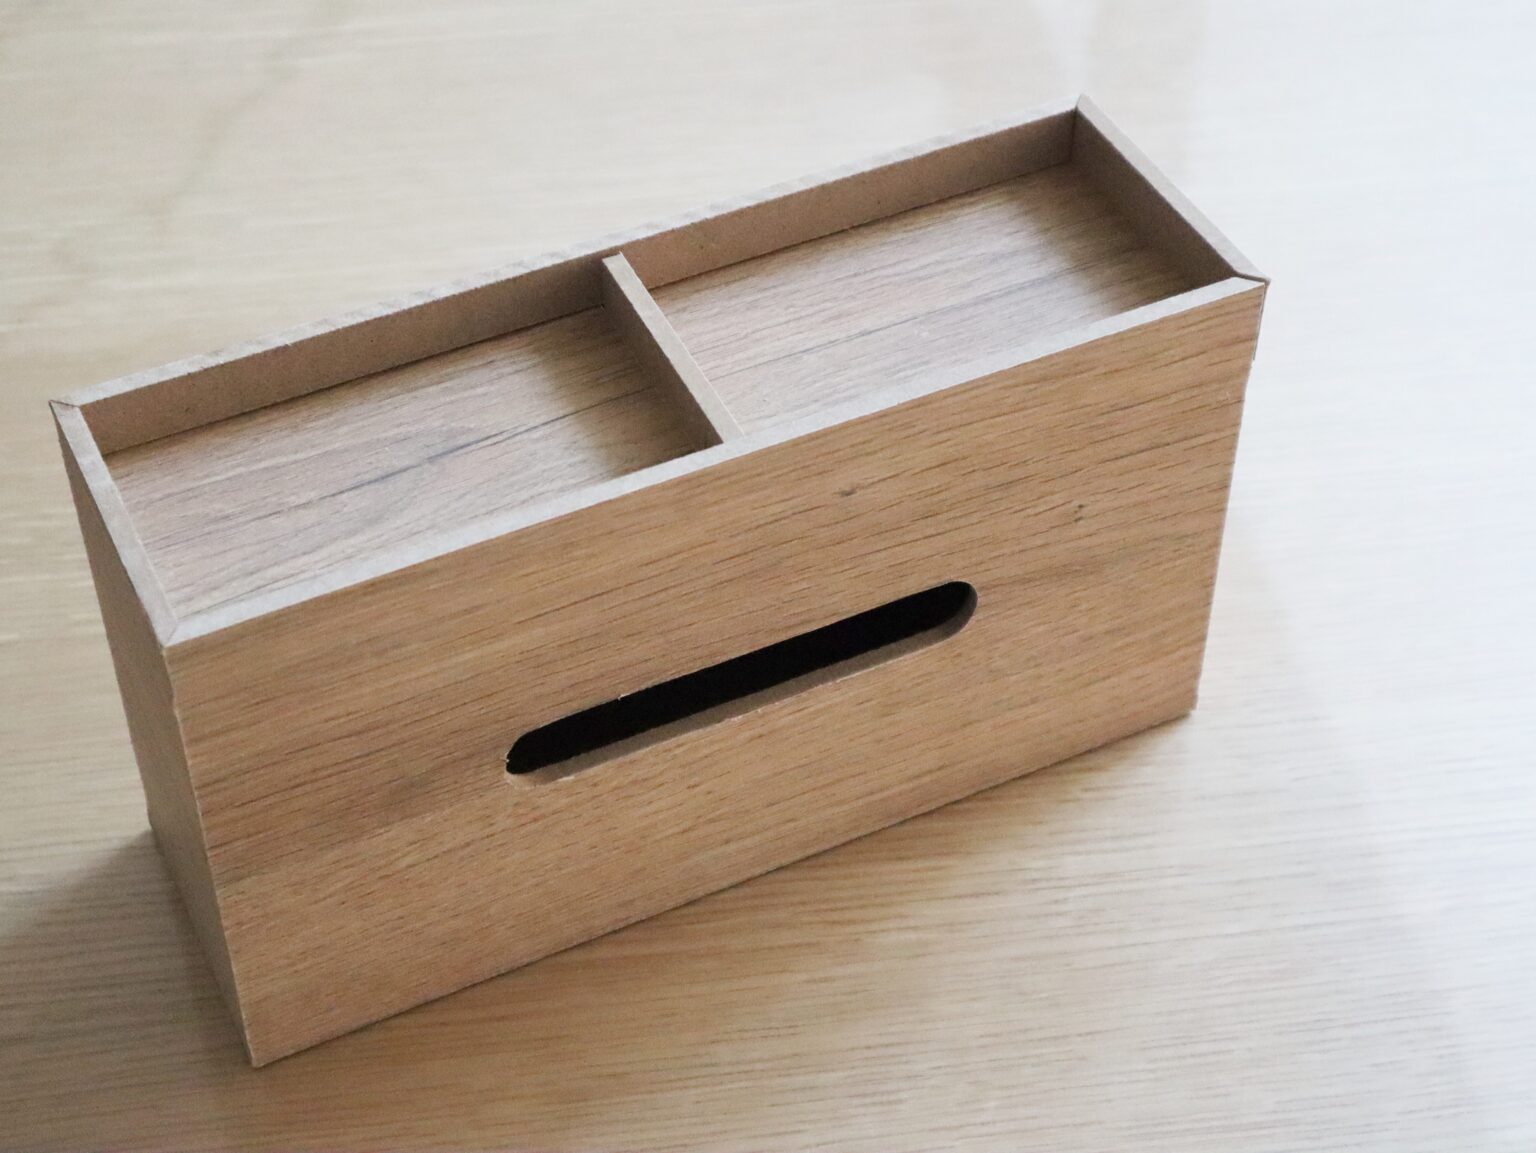 【ダイソー】木製ティッシュケースでテーブル周りがすっきり解決。 | 北欧と。